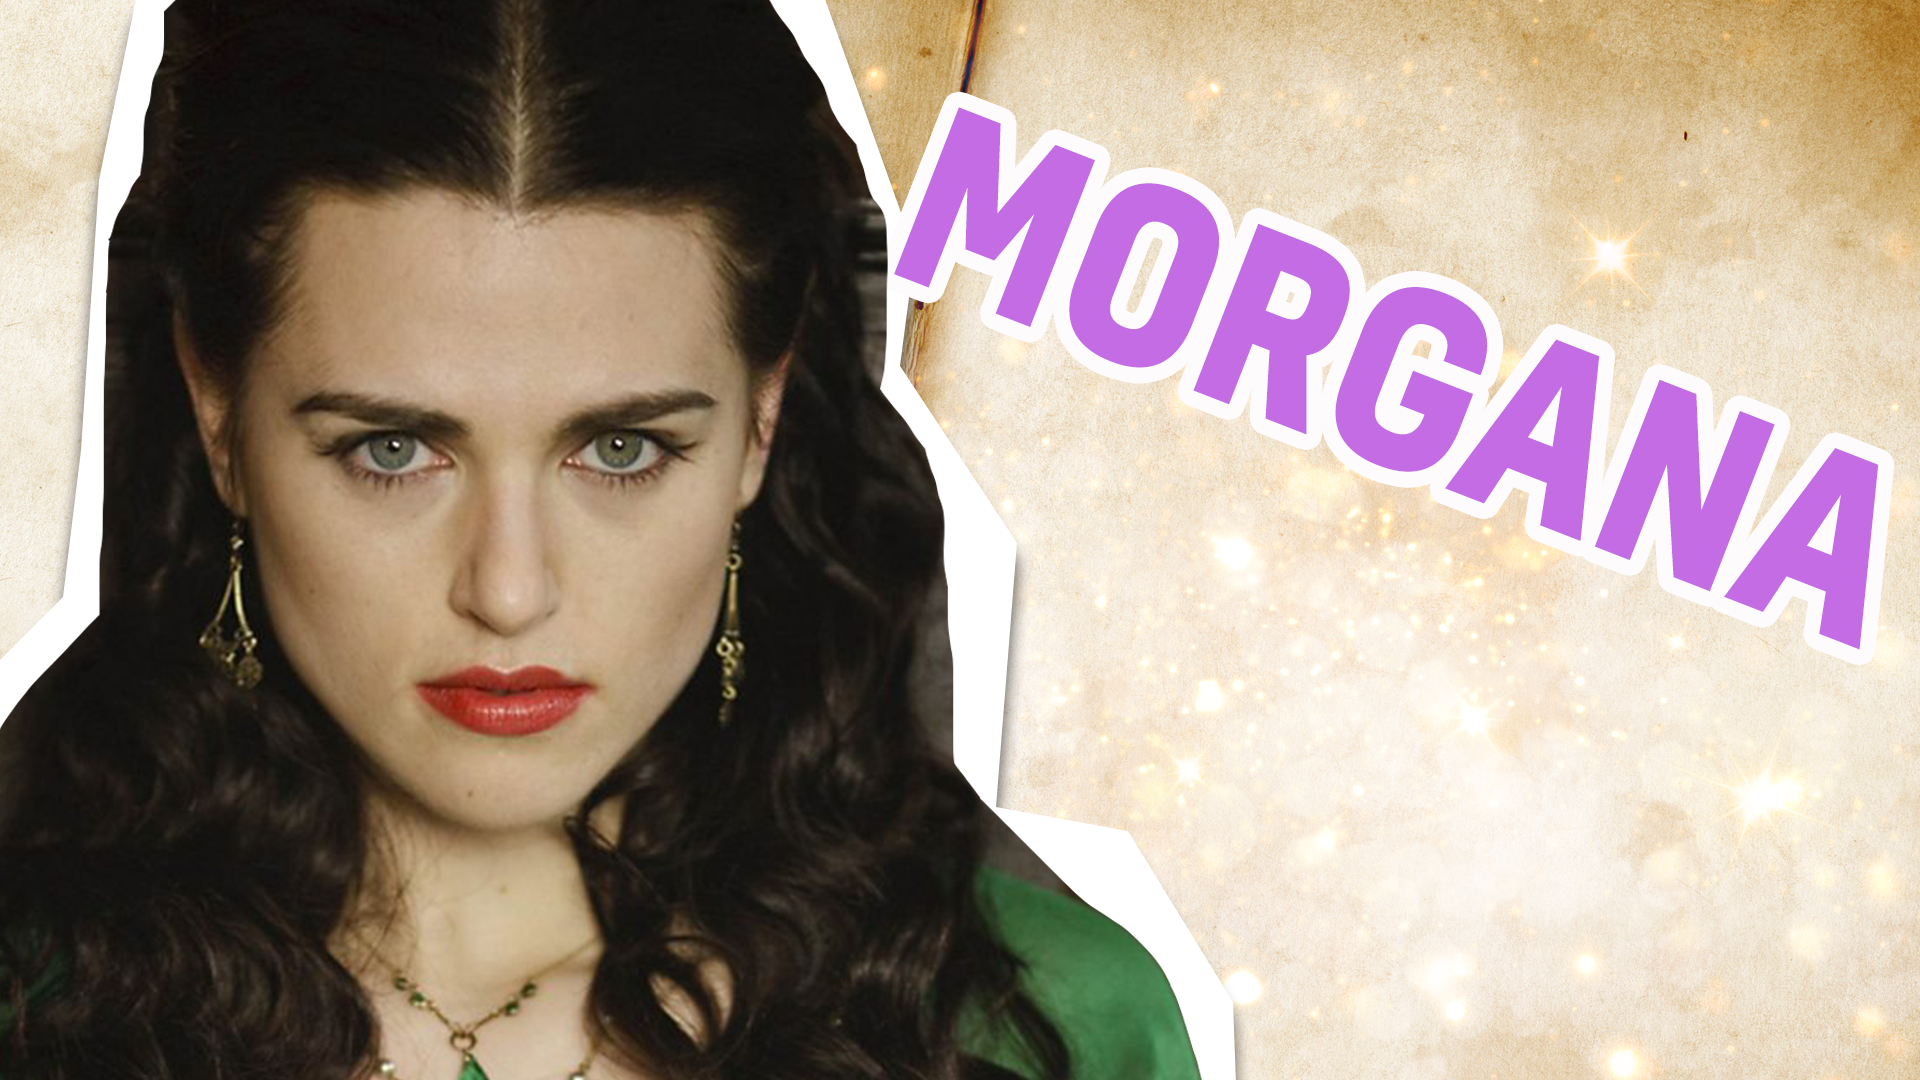 Morgana result